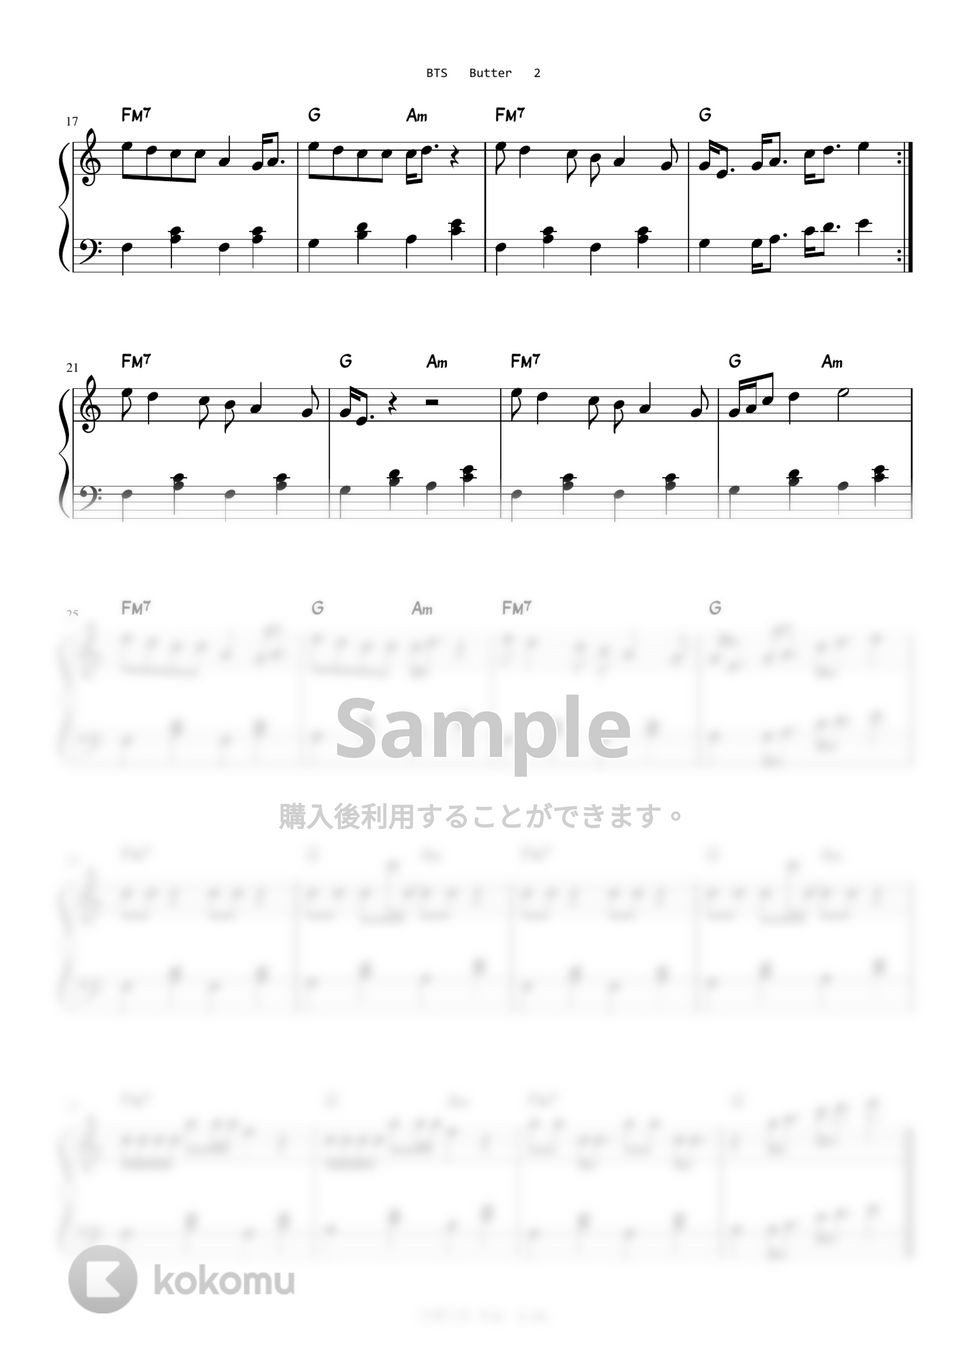 防弾少年団(BTS) - Butter (Easy Version) by A.Ha